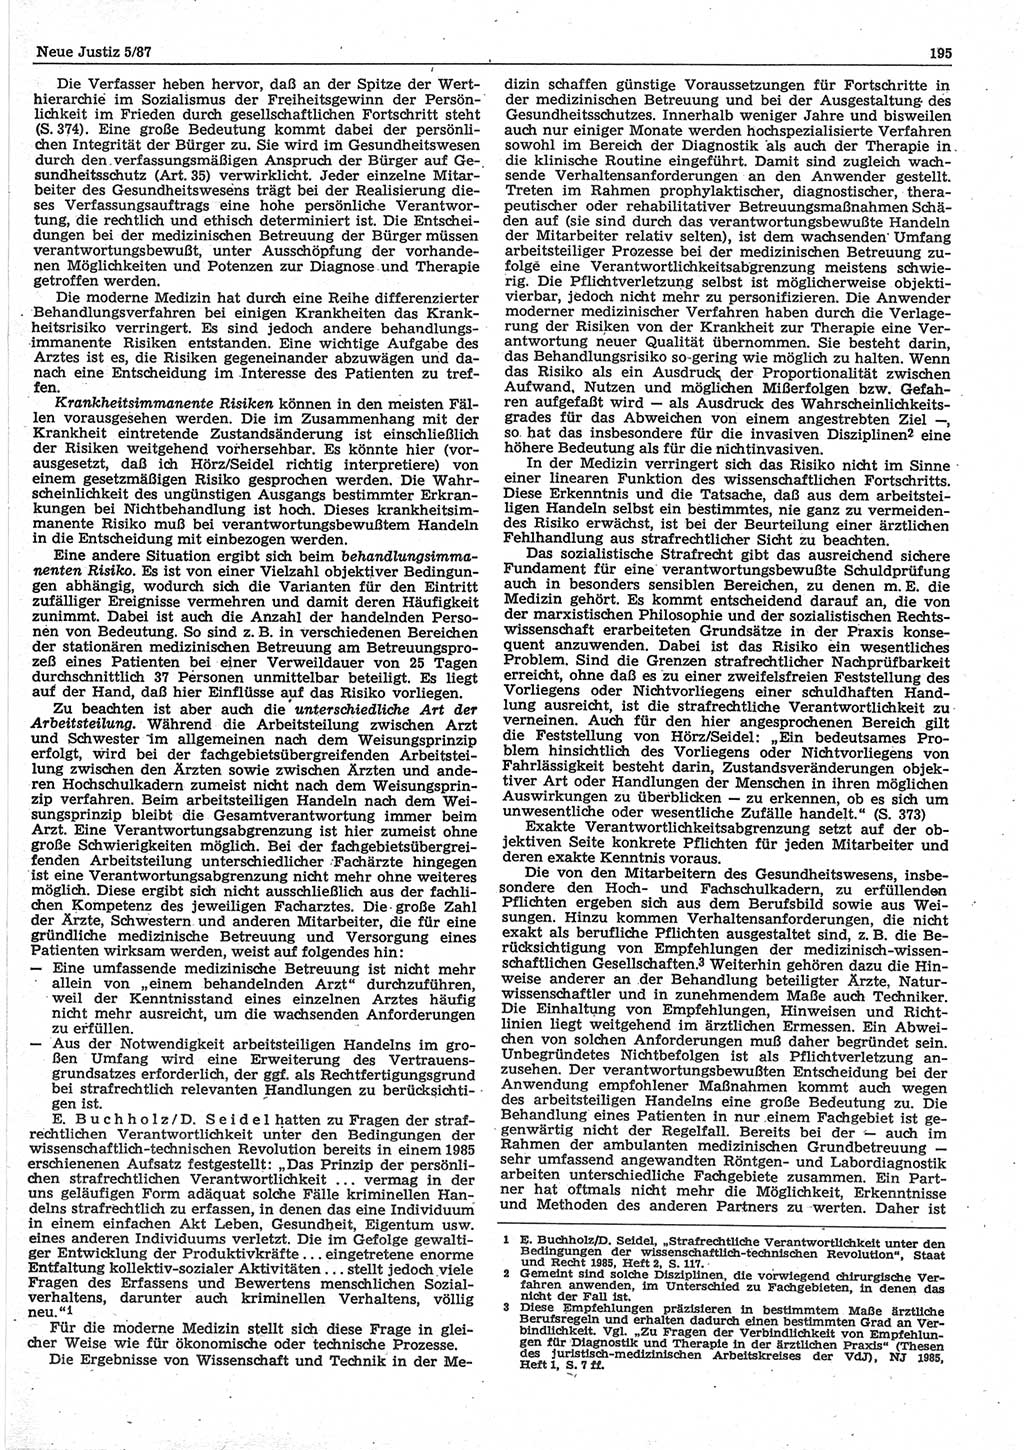 Neue Justiz (NJ), Zeitschrift für sozialistisches Recht und Gesetzlichkeit [Deutsche Demokratische Republik (DDR)], 41. Jahrgang 1987, Seite 195 (NJ DDR 1987, S. 195)